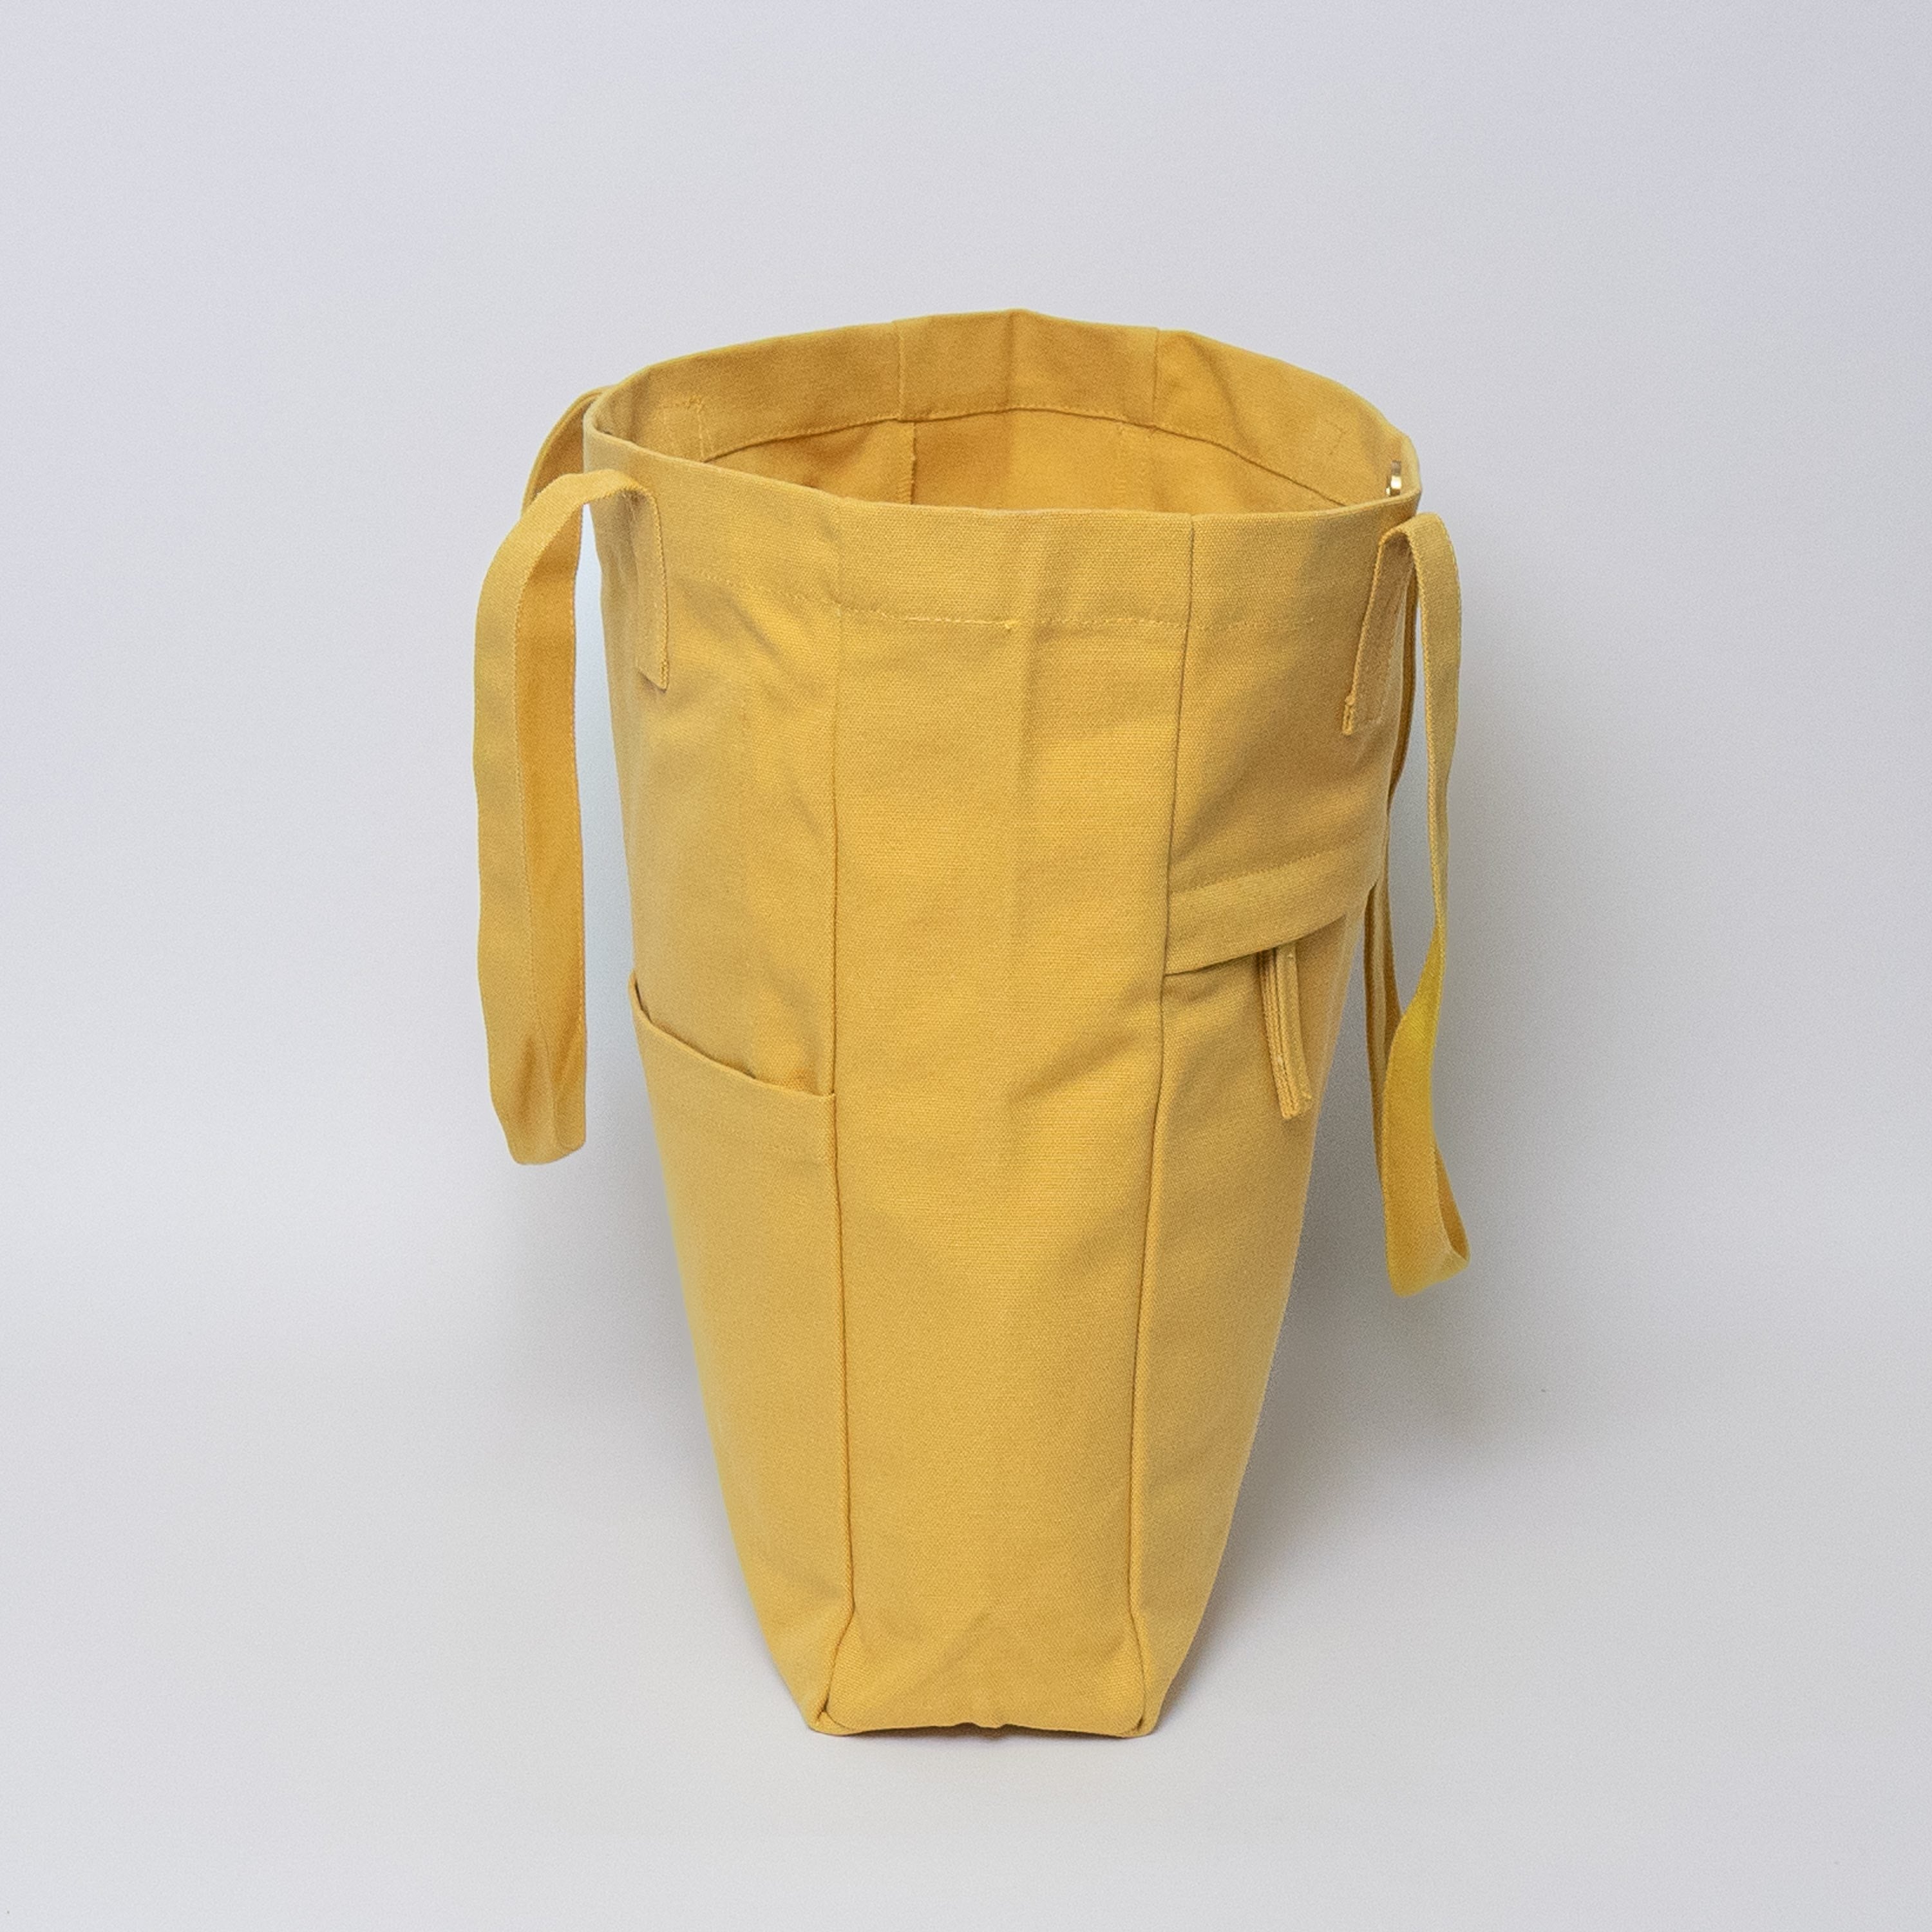 Canvas Tote Bags | BLICK Art Materials